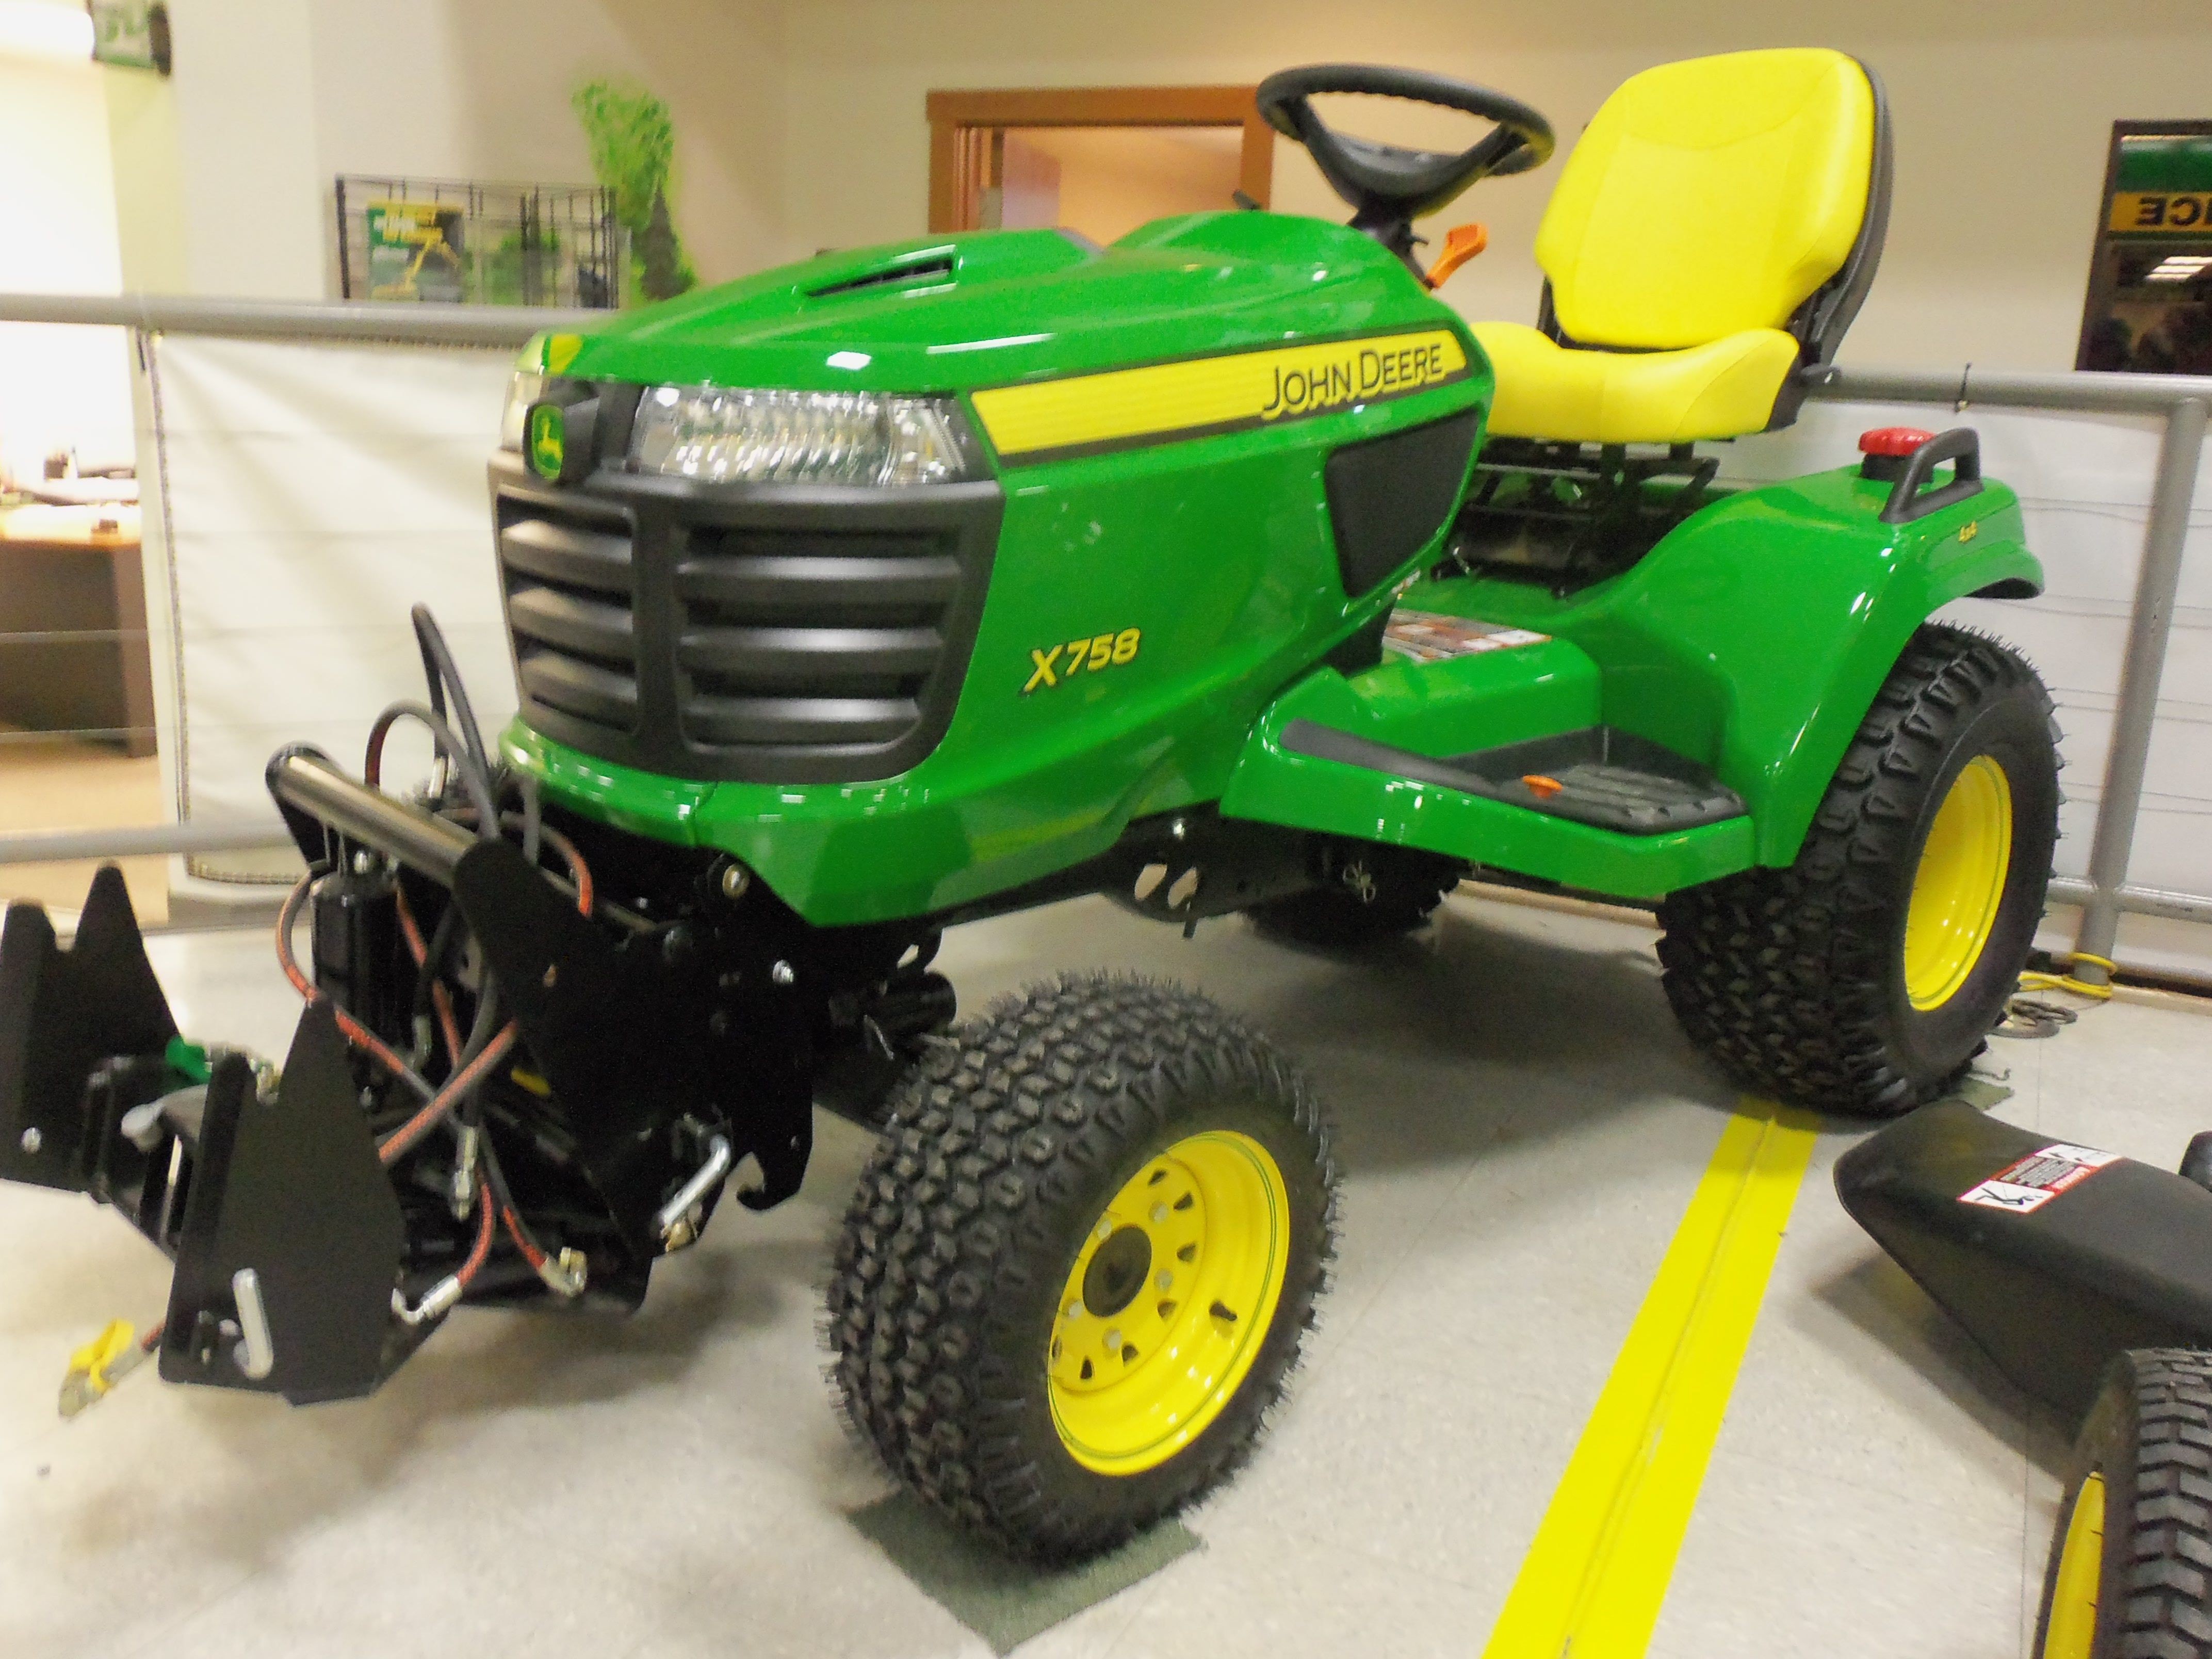 John Deere X758 garden tractor 24hp 60 cid sel 1 258 lbs from